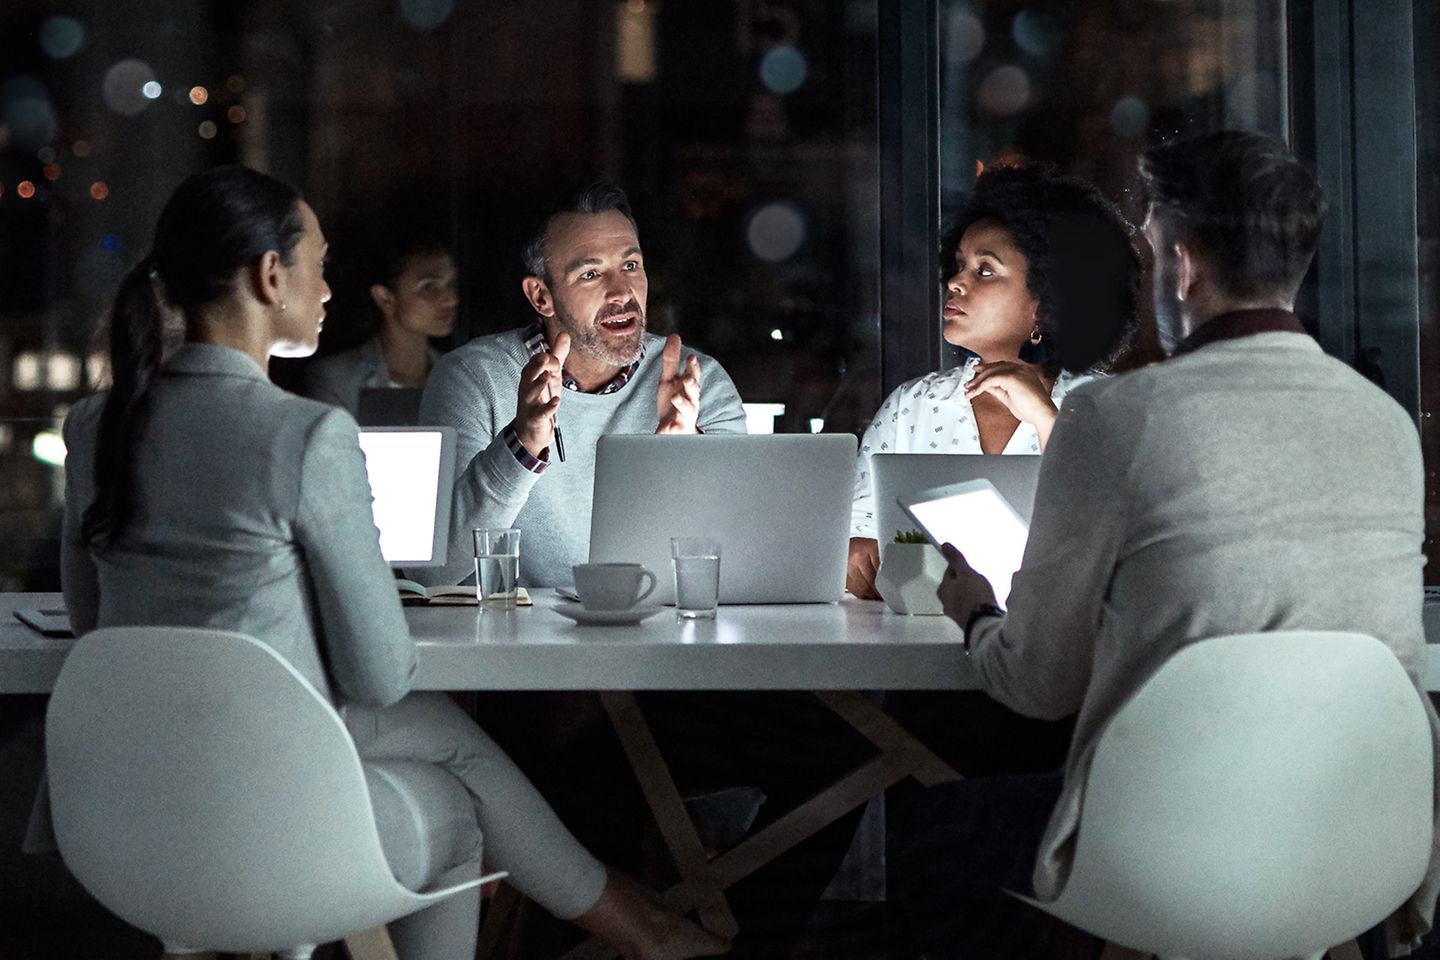 Vier mensen zitten rondom een grijze tafel en zijn in gesprek